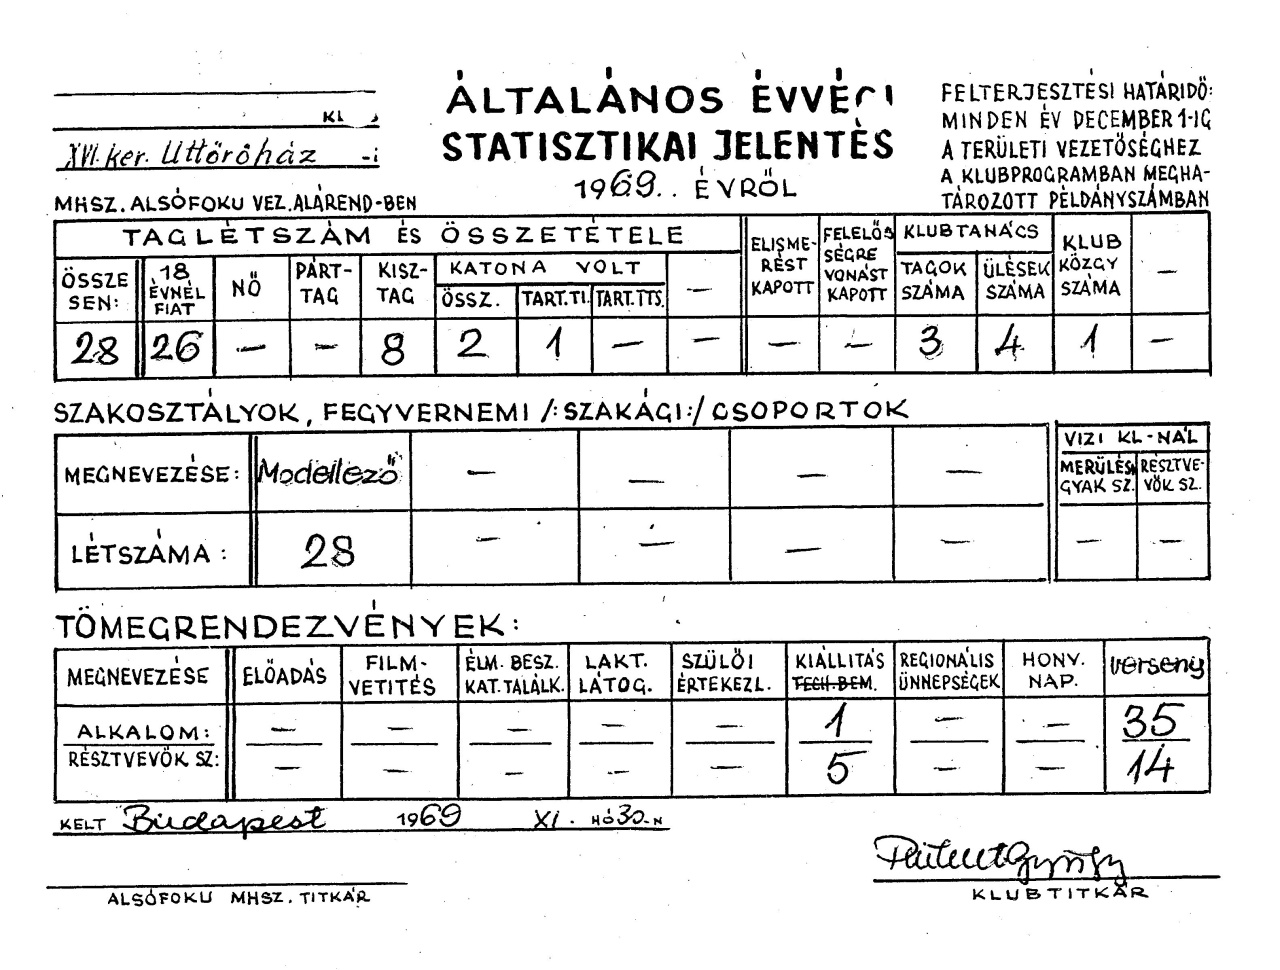 Év végi statisztikai jelentésünk (1969)